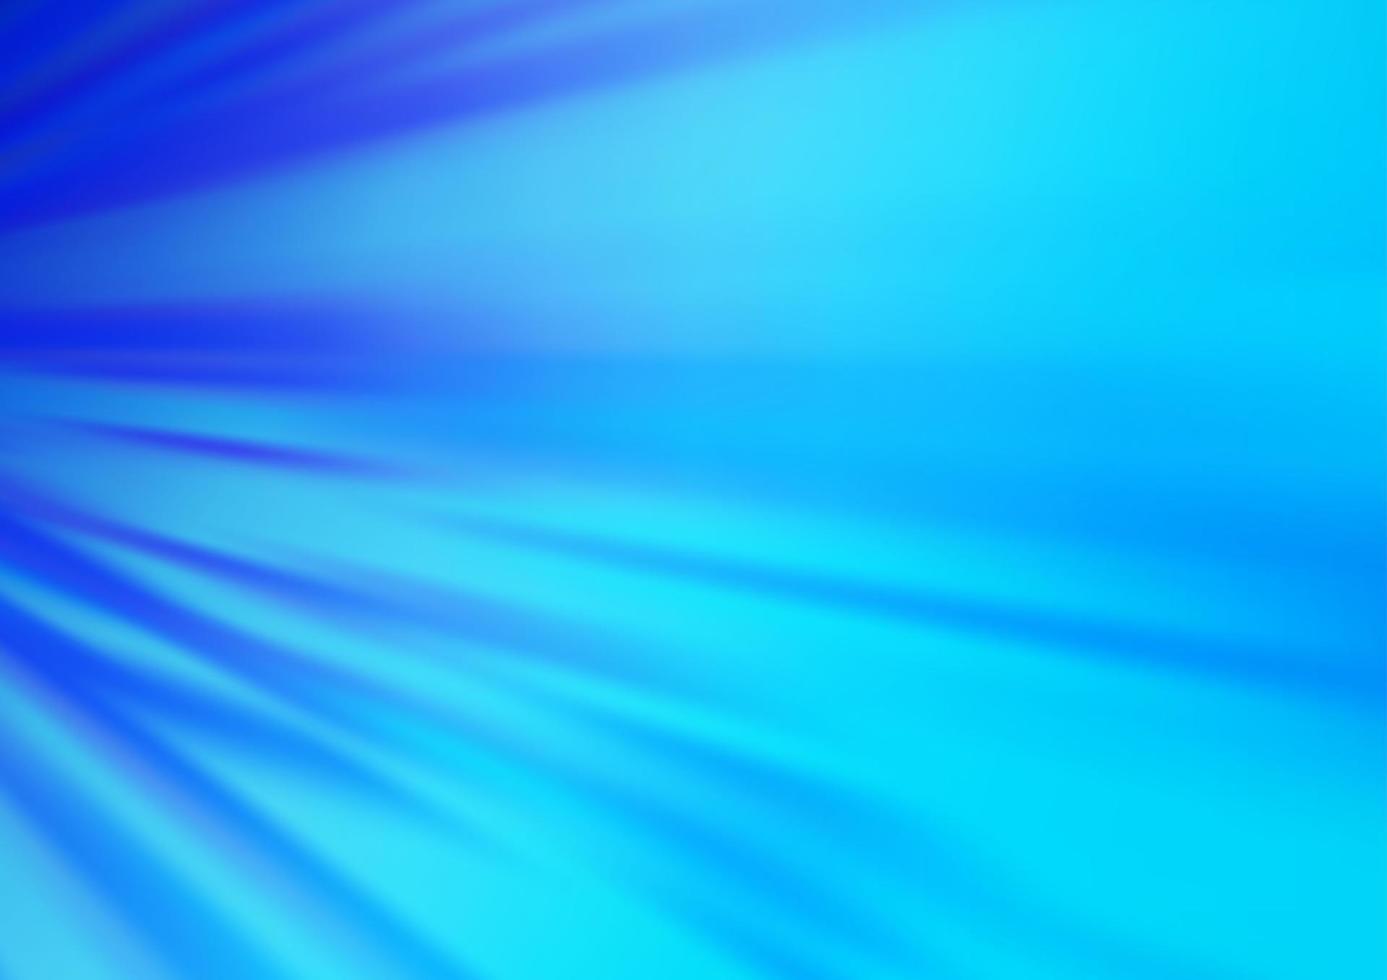 textura de vector azul claro con líneas de colores.